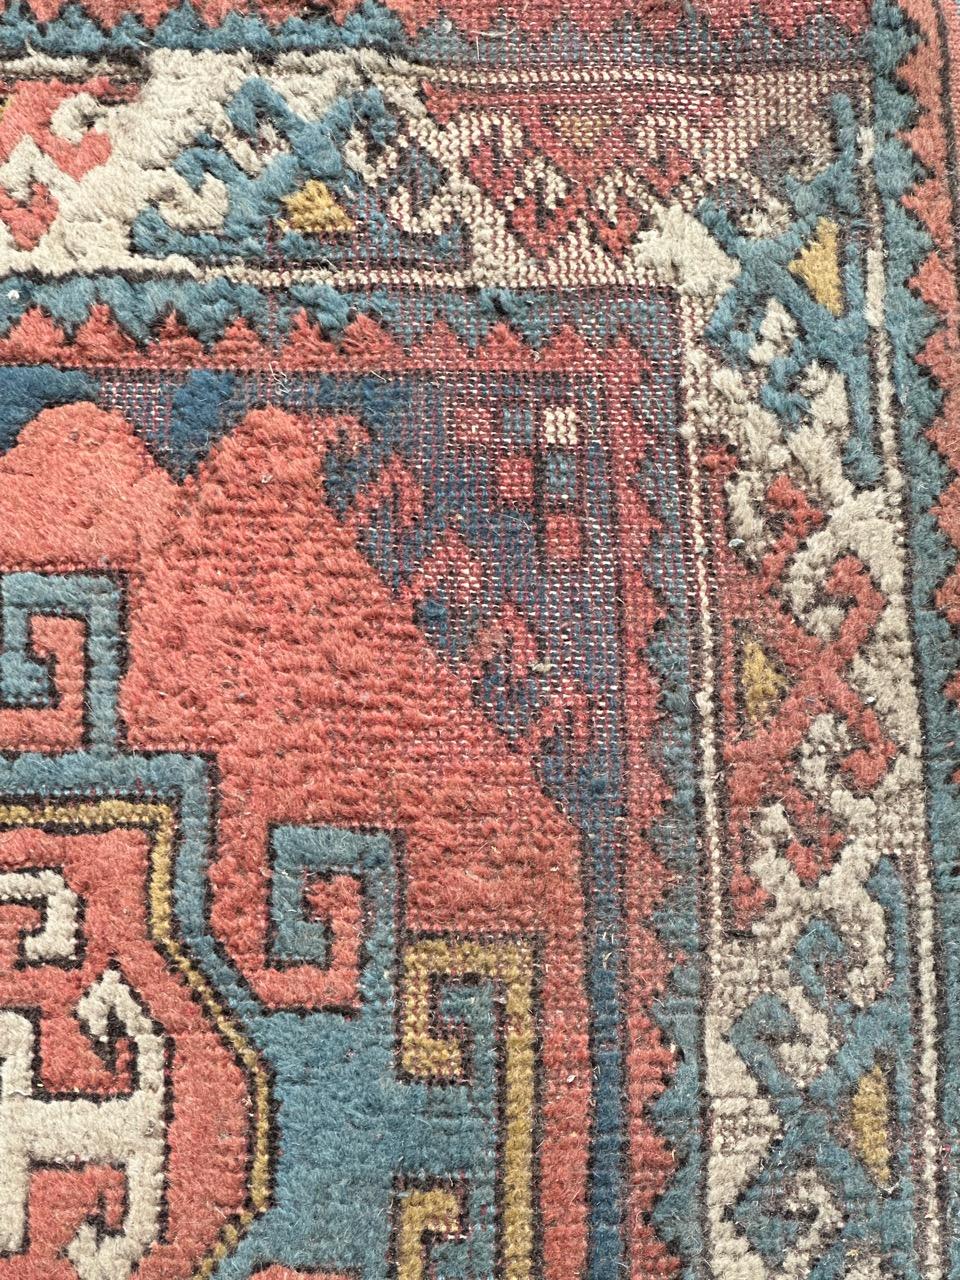 Türkischer Teppich aus der Mitte des Jahrhunderts mit schönem geometrischem Muster im Kazak-Stil und schönen Farben mit rosa Hintergrund, blau, gelb und weiß, erhebliche Gebrauchsspuren, aber bereits in einem stabilen Zustand, komplett handgeknüpft